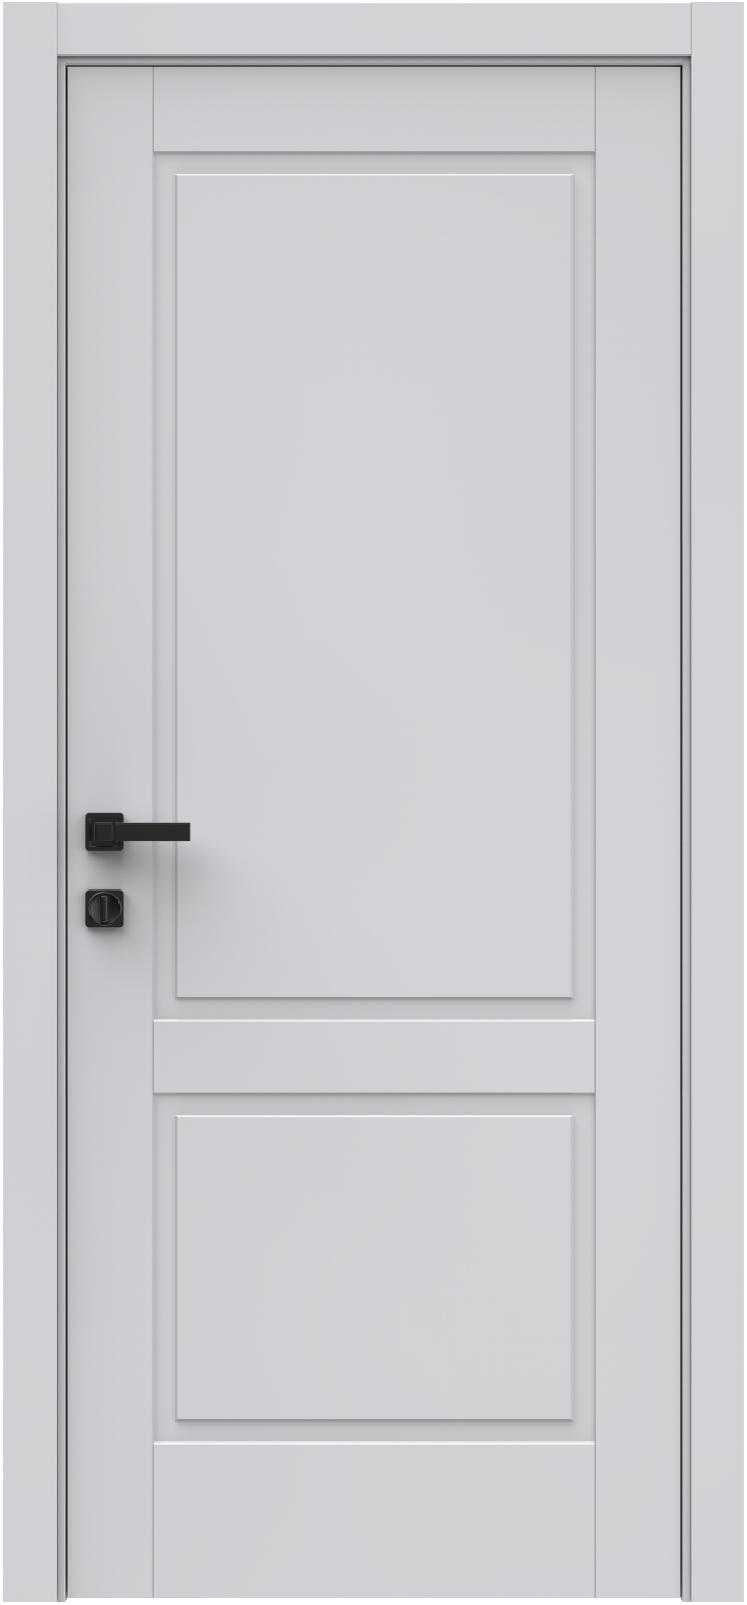 Questdoors Межкомнатная дверь QIS2, арт. 26328 - фото №1